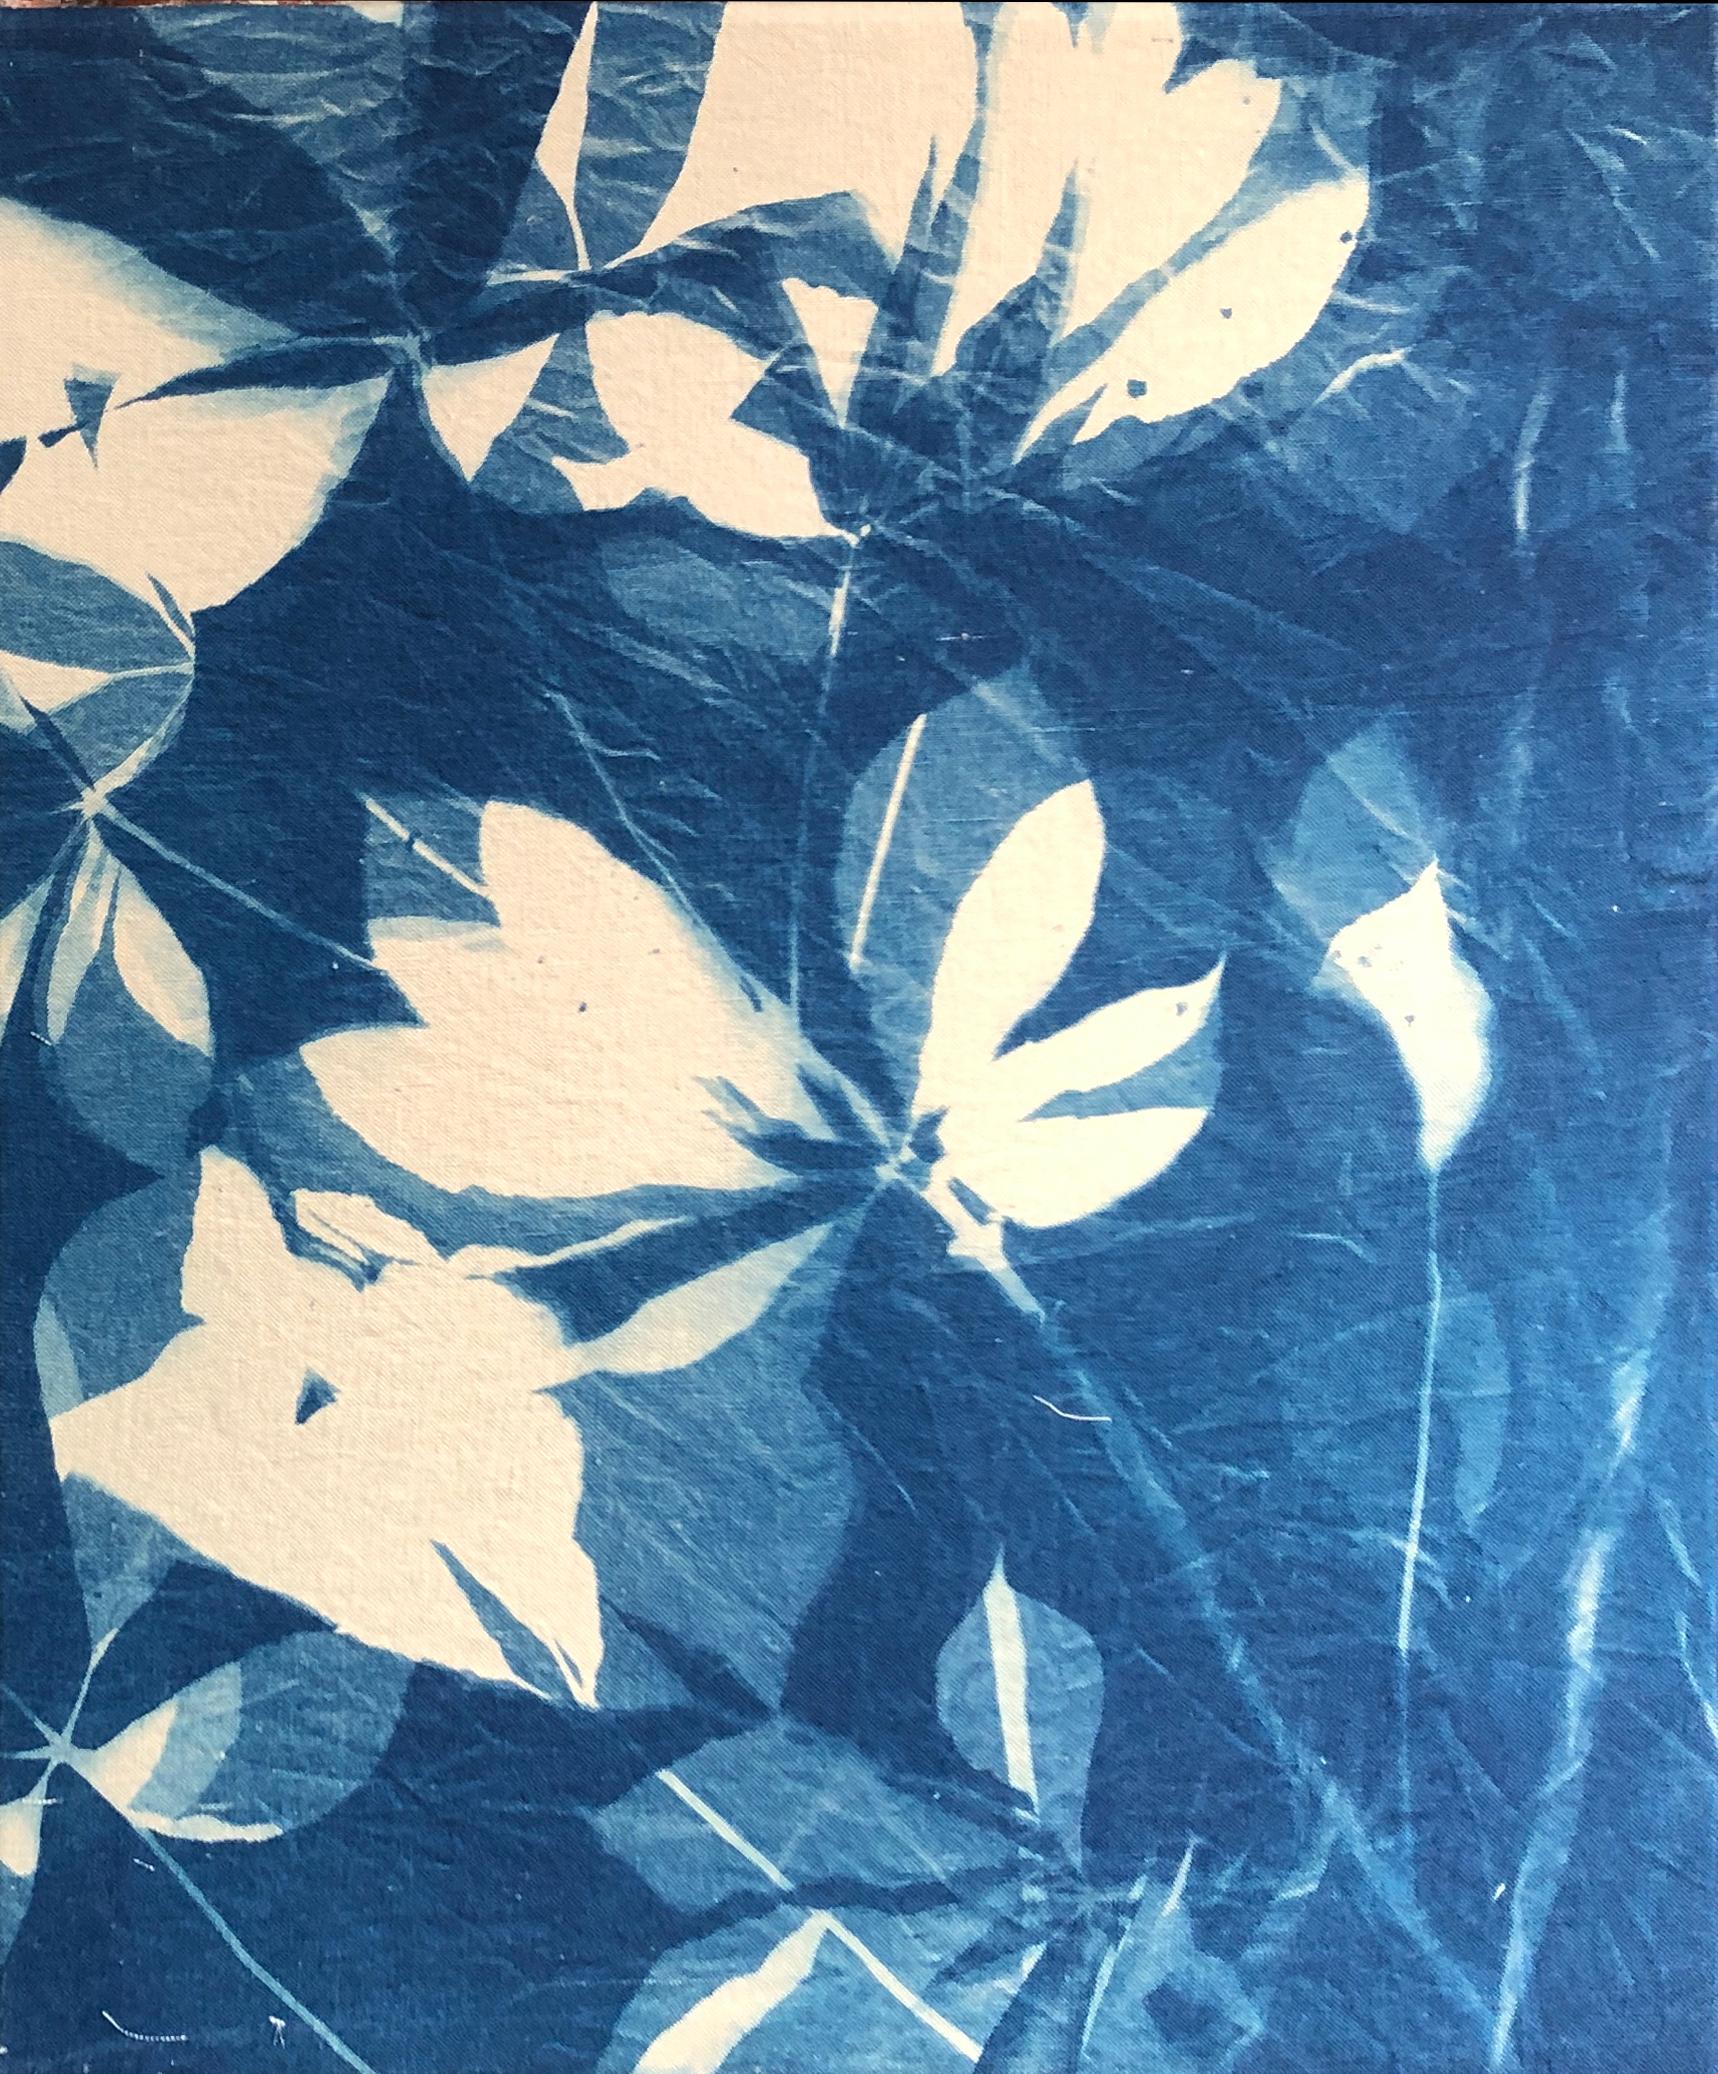 Marie Craig Landscape Photograph – "Buckeye", zeitgenössisch, Baum, Blätter, blau, Cyanotypie, Fotografie